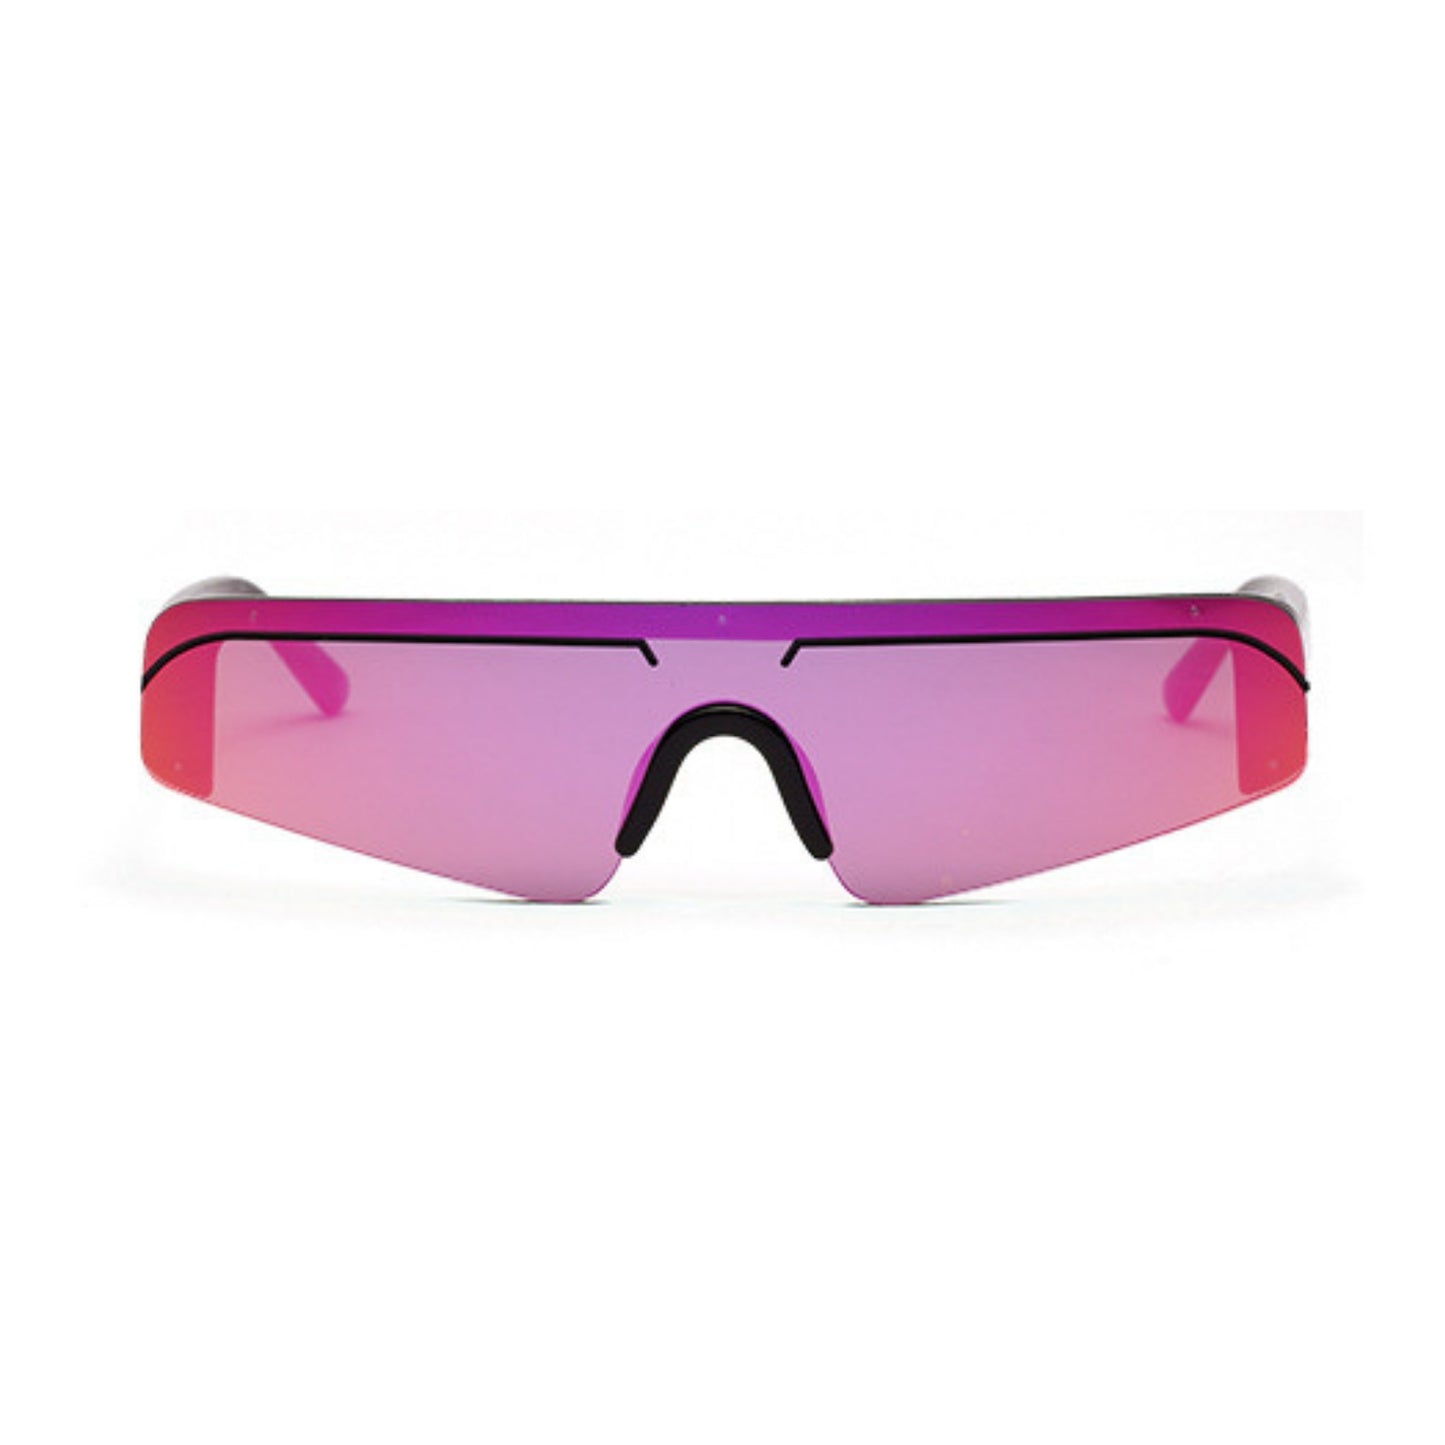 Γυαλιά ηλίου (Μάσκα) Miami της Exposure Sunglasses με προστασία UV400 με μαύρο σκελετό και μωβ φακό.